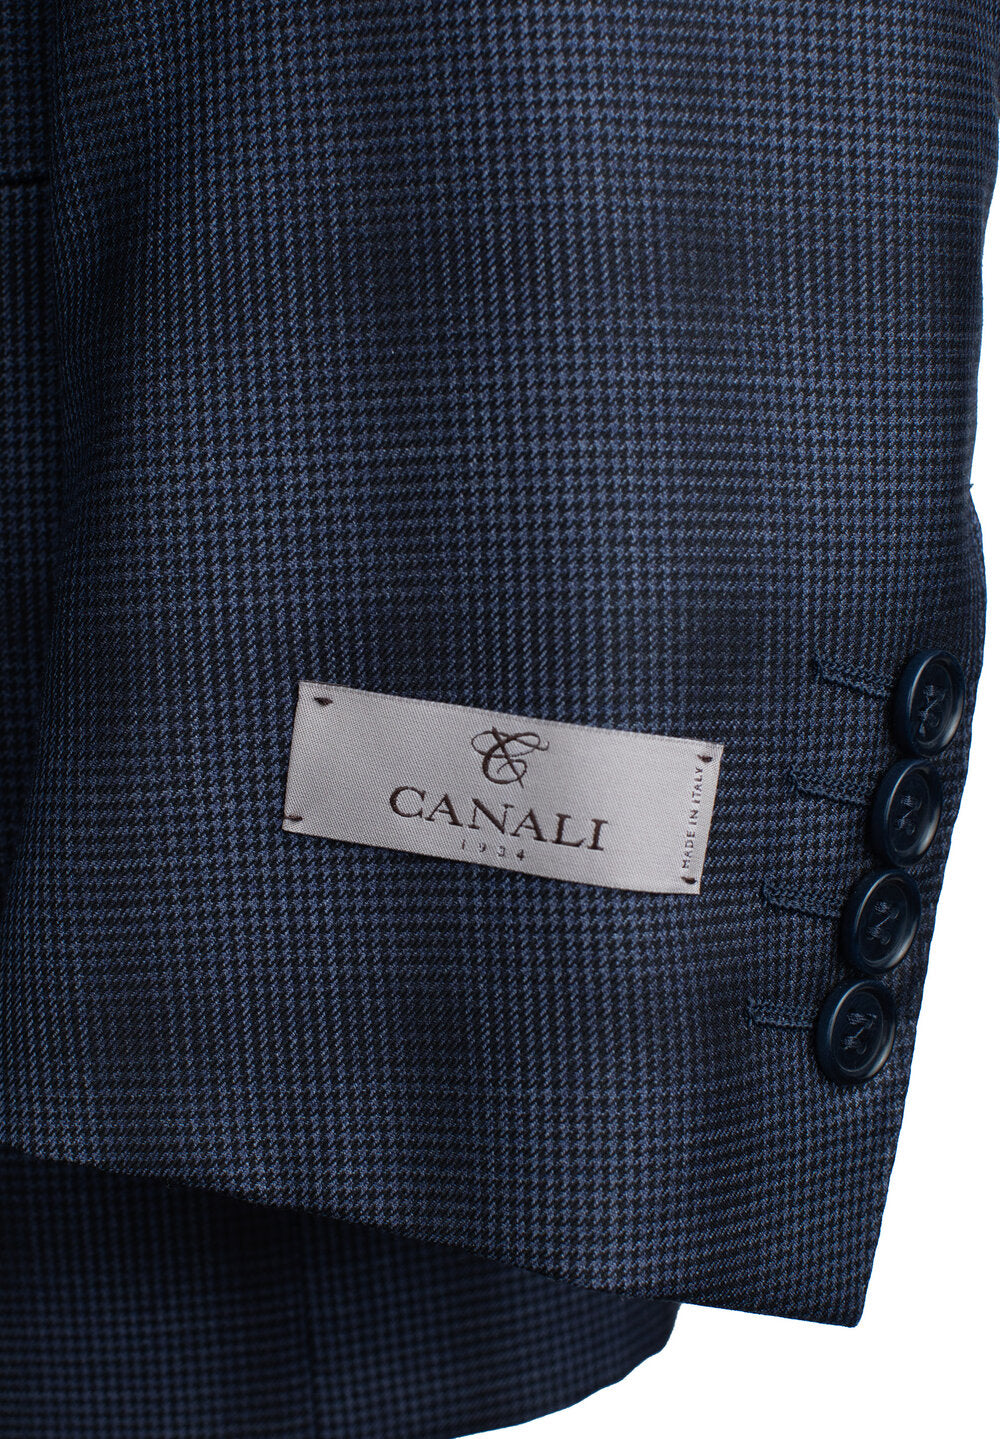 Canali Siena Model Suit in Blue Windowpane